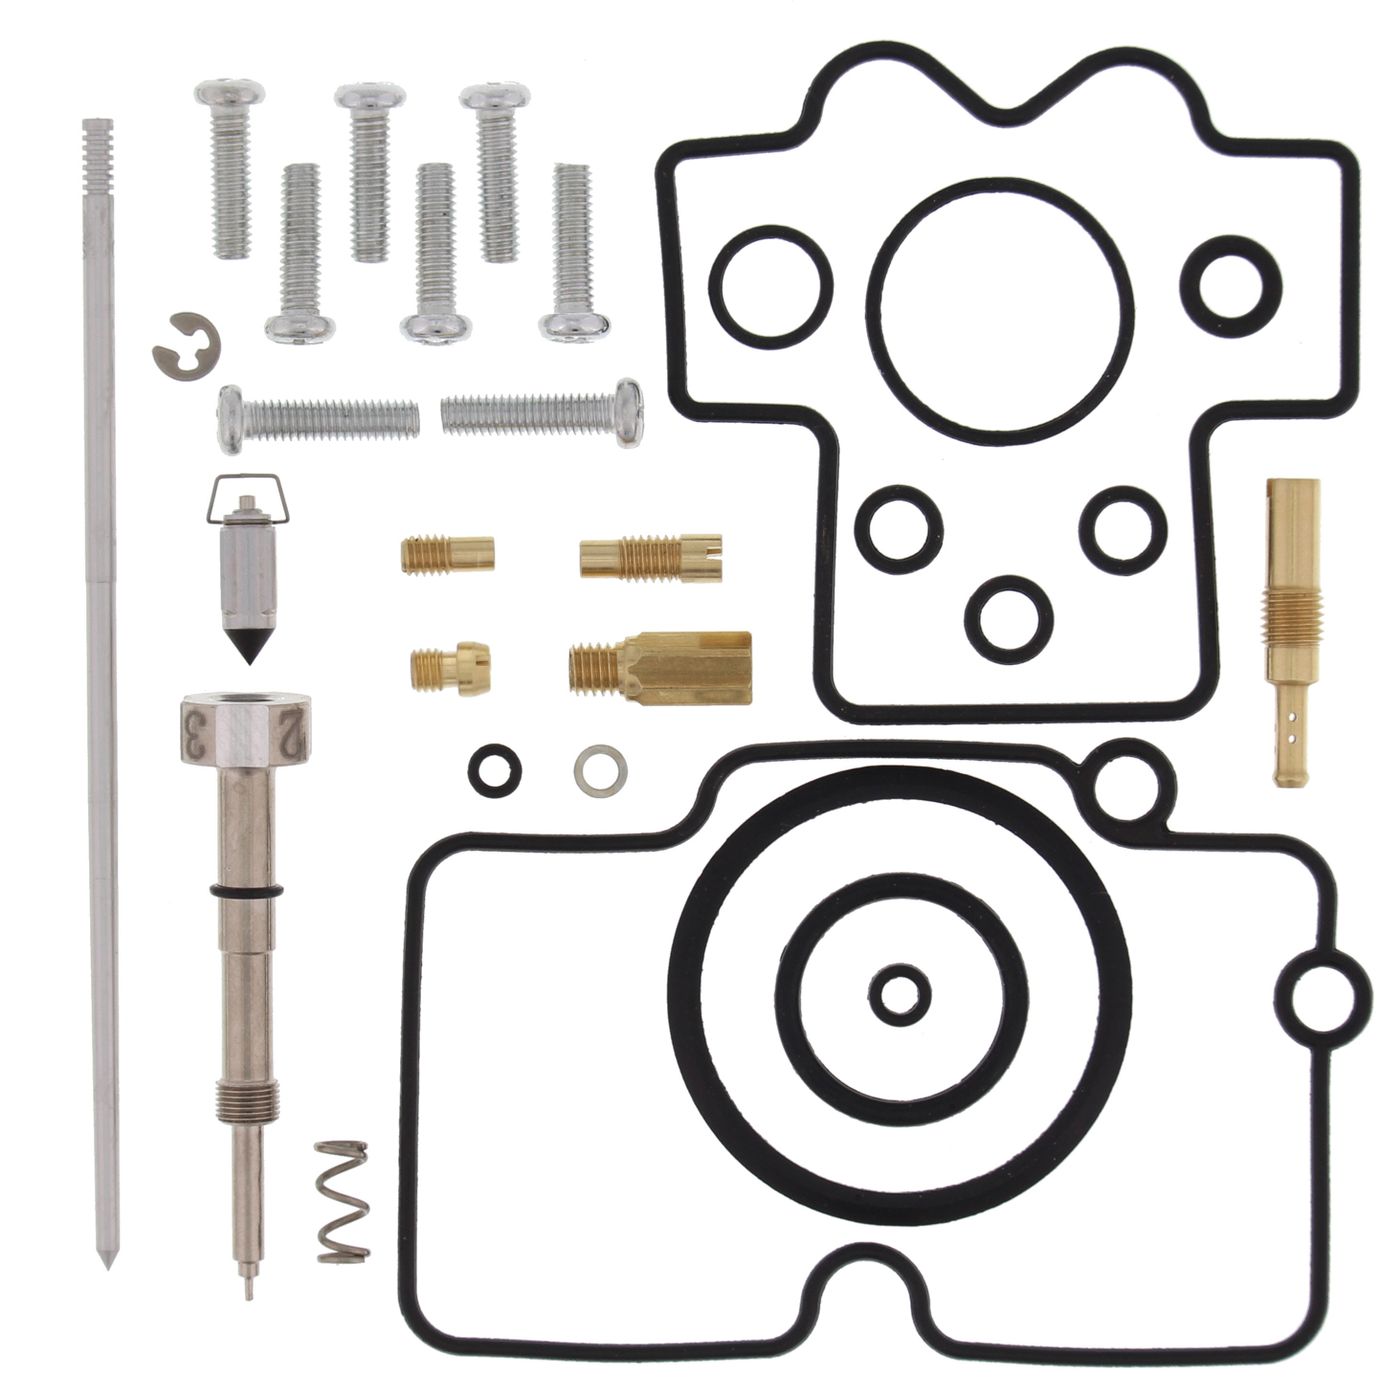 Wrp Carb Repair Kits - WRP261006 image